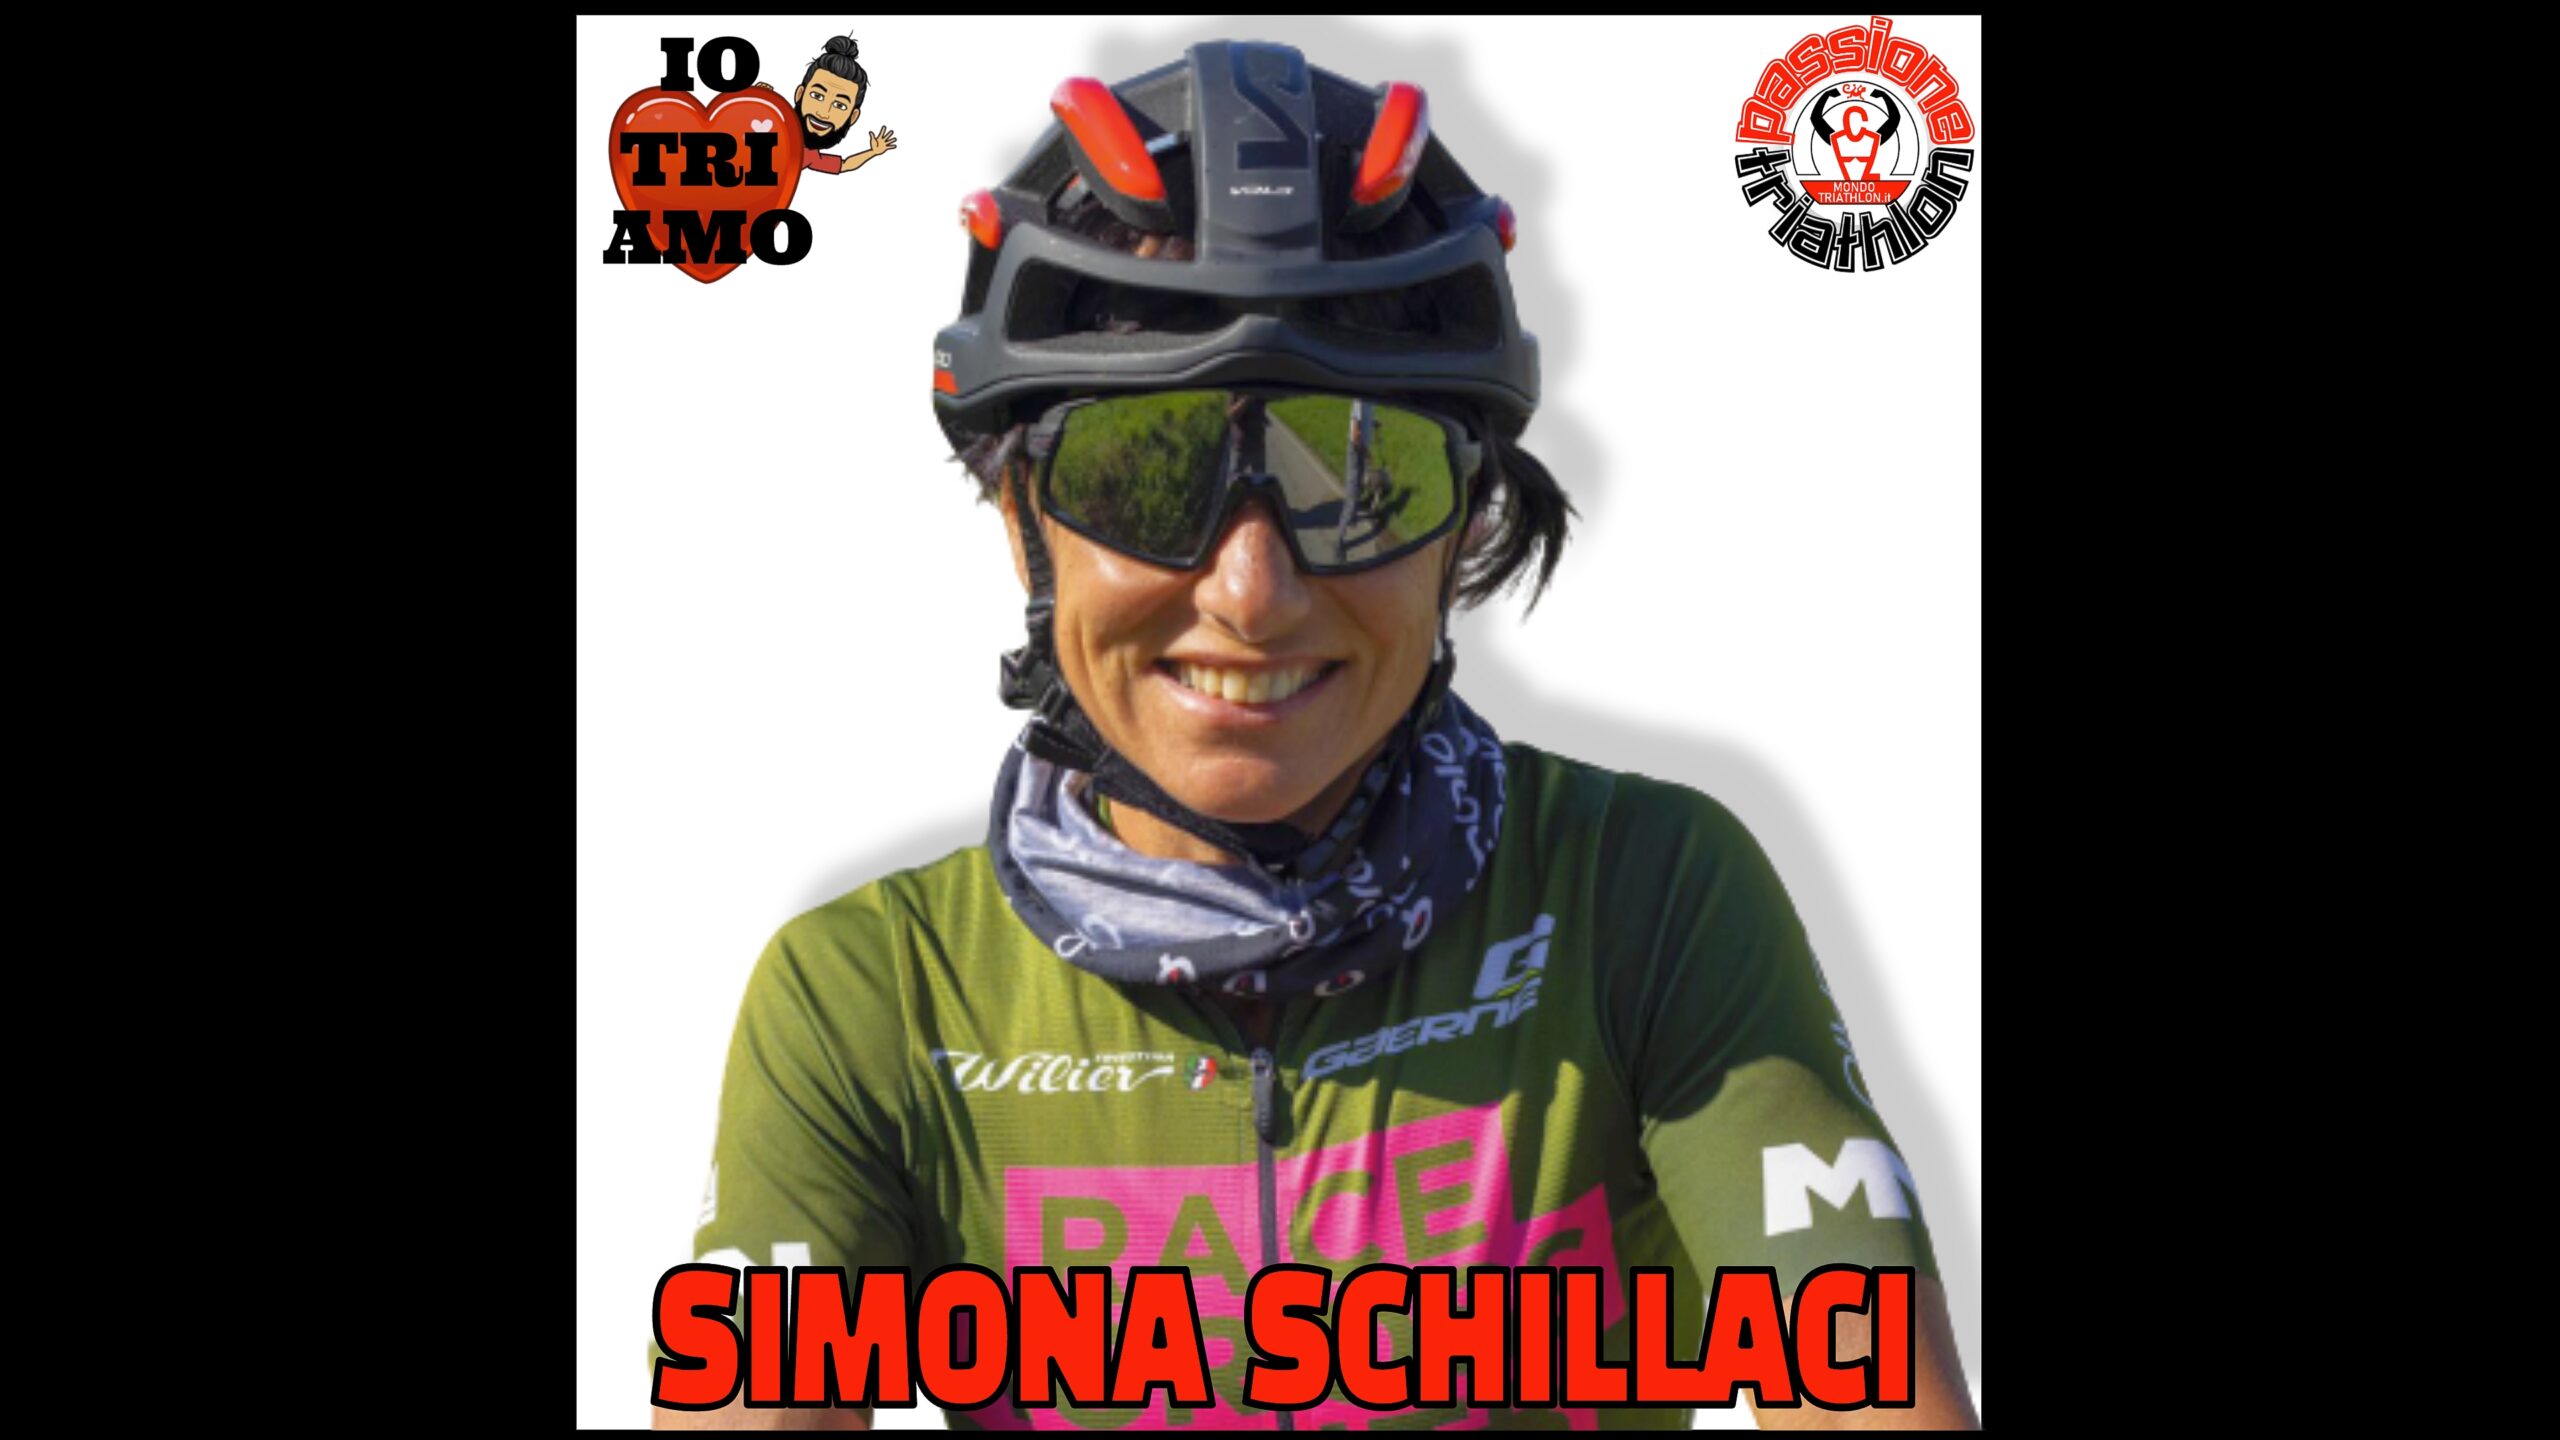 Passione Triathlon Sabrina Schillaci